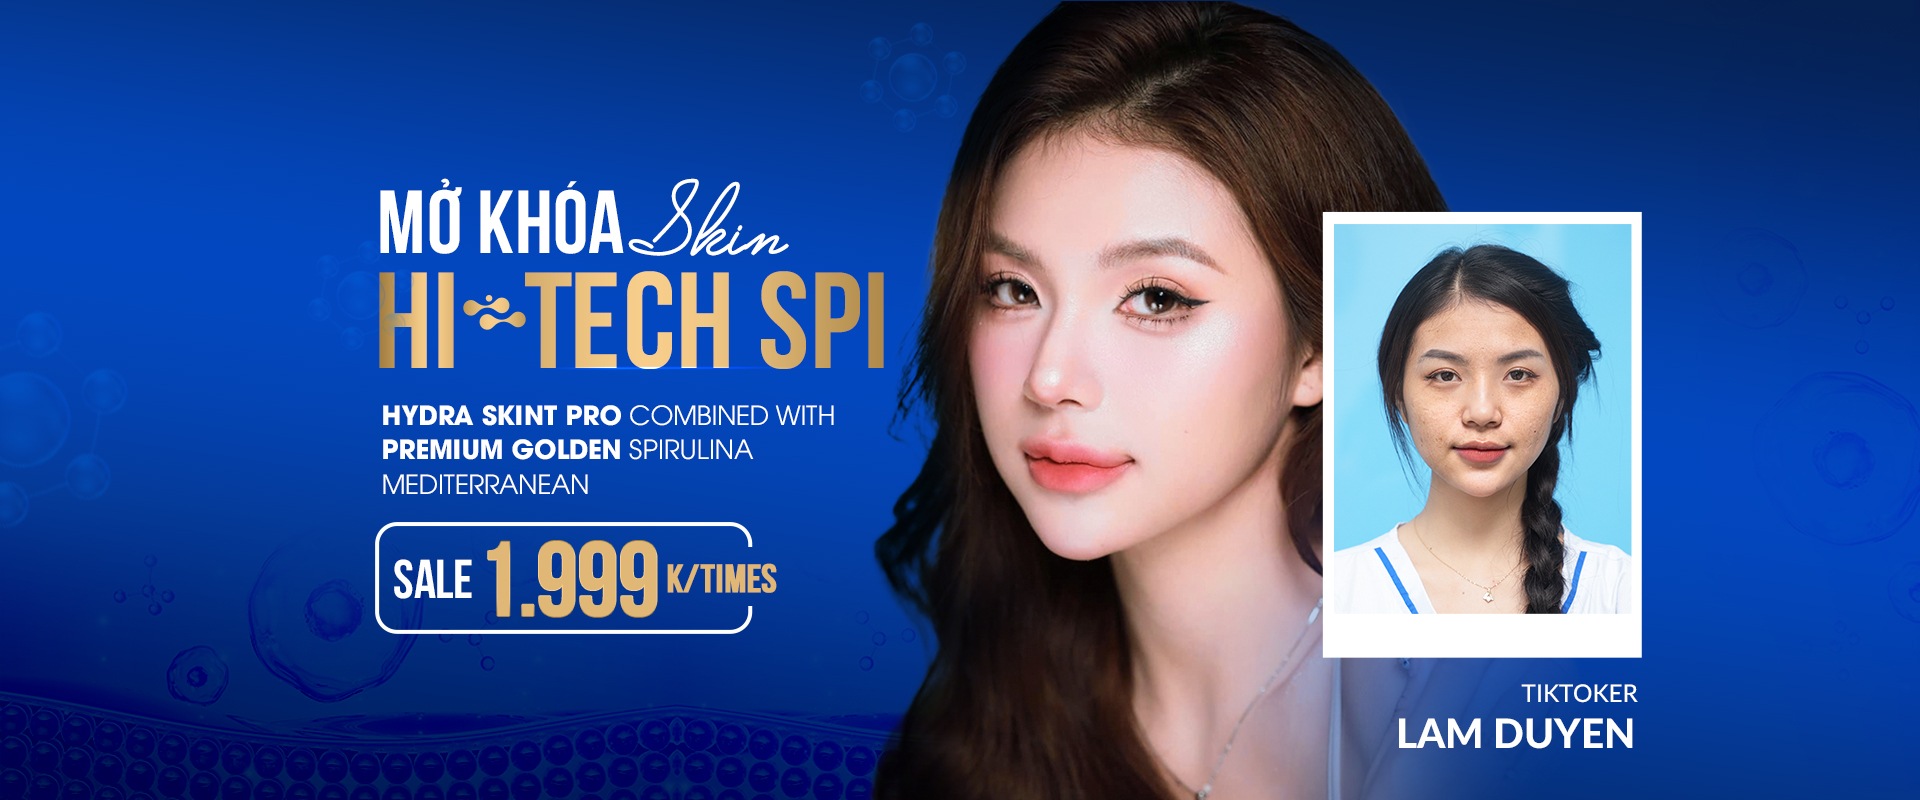 High Tech SPI intensive skin beauty technology